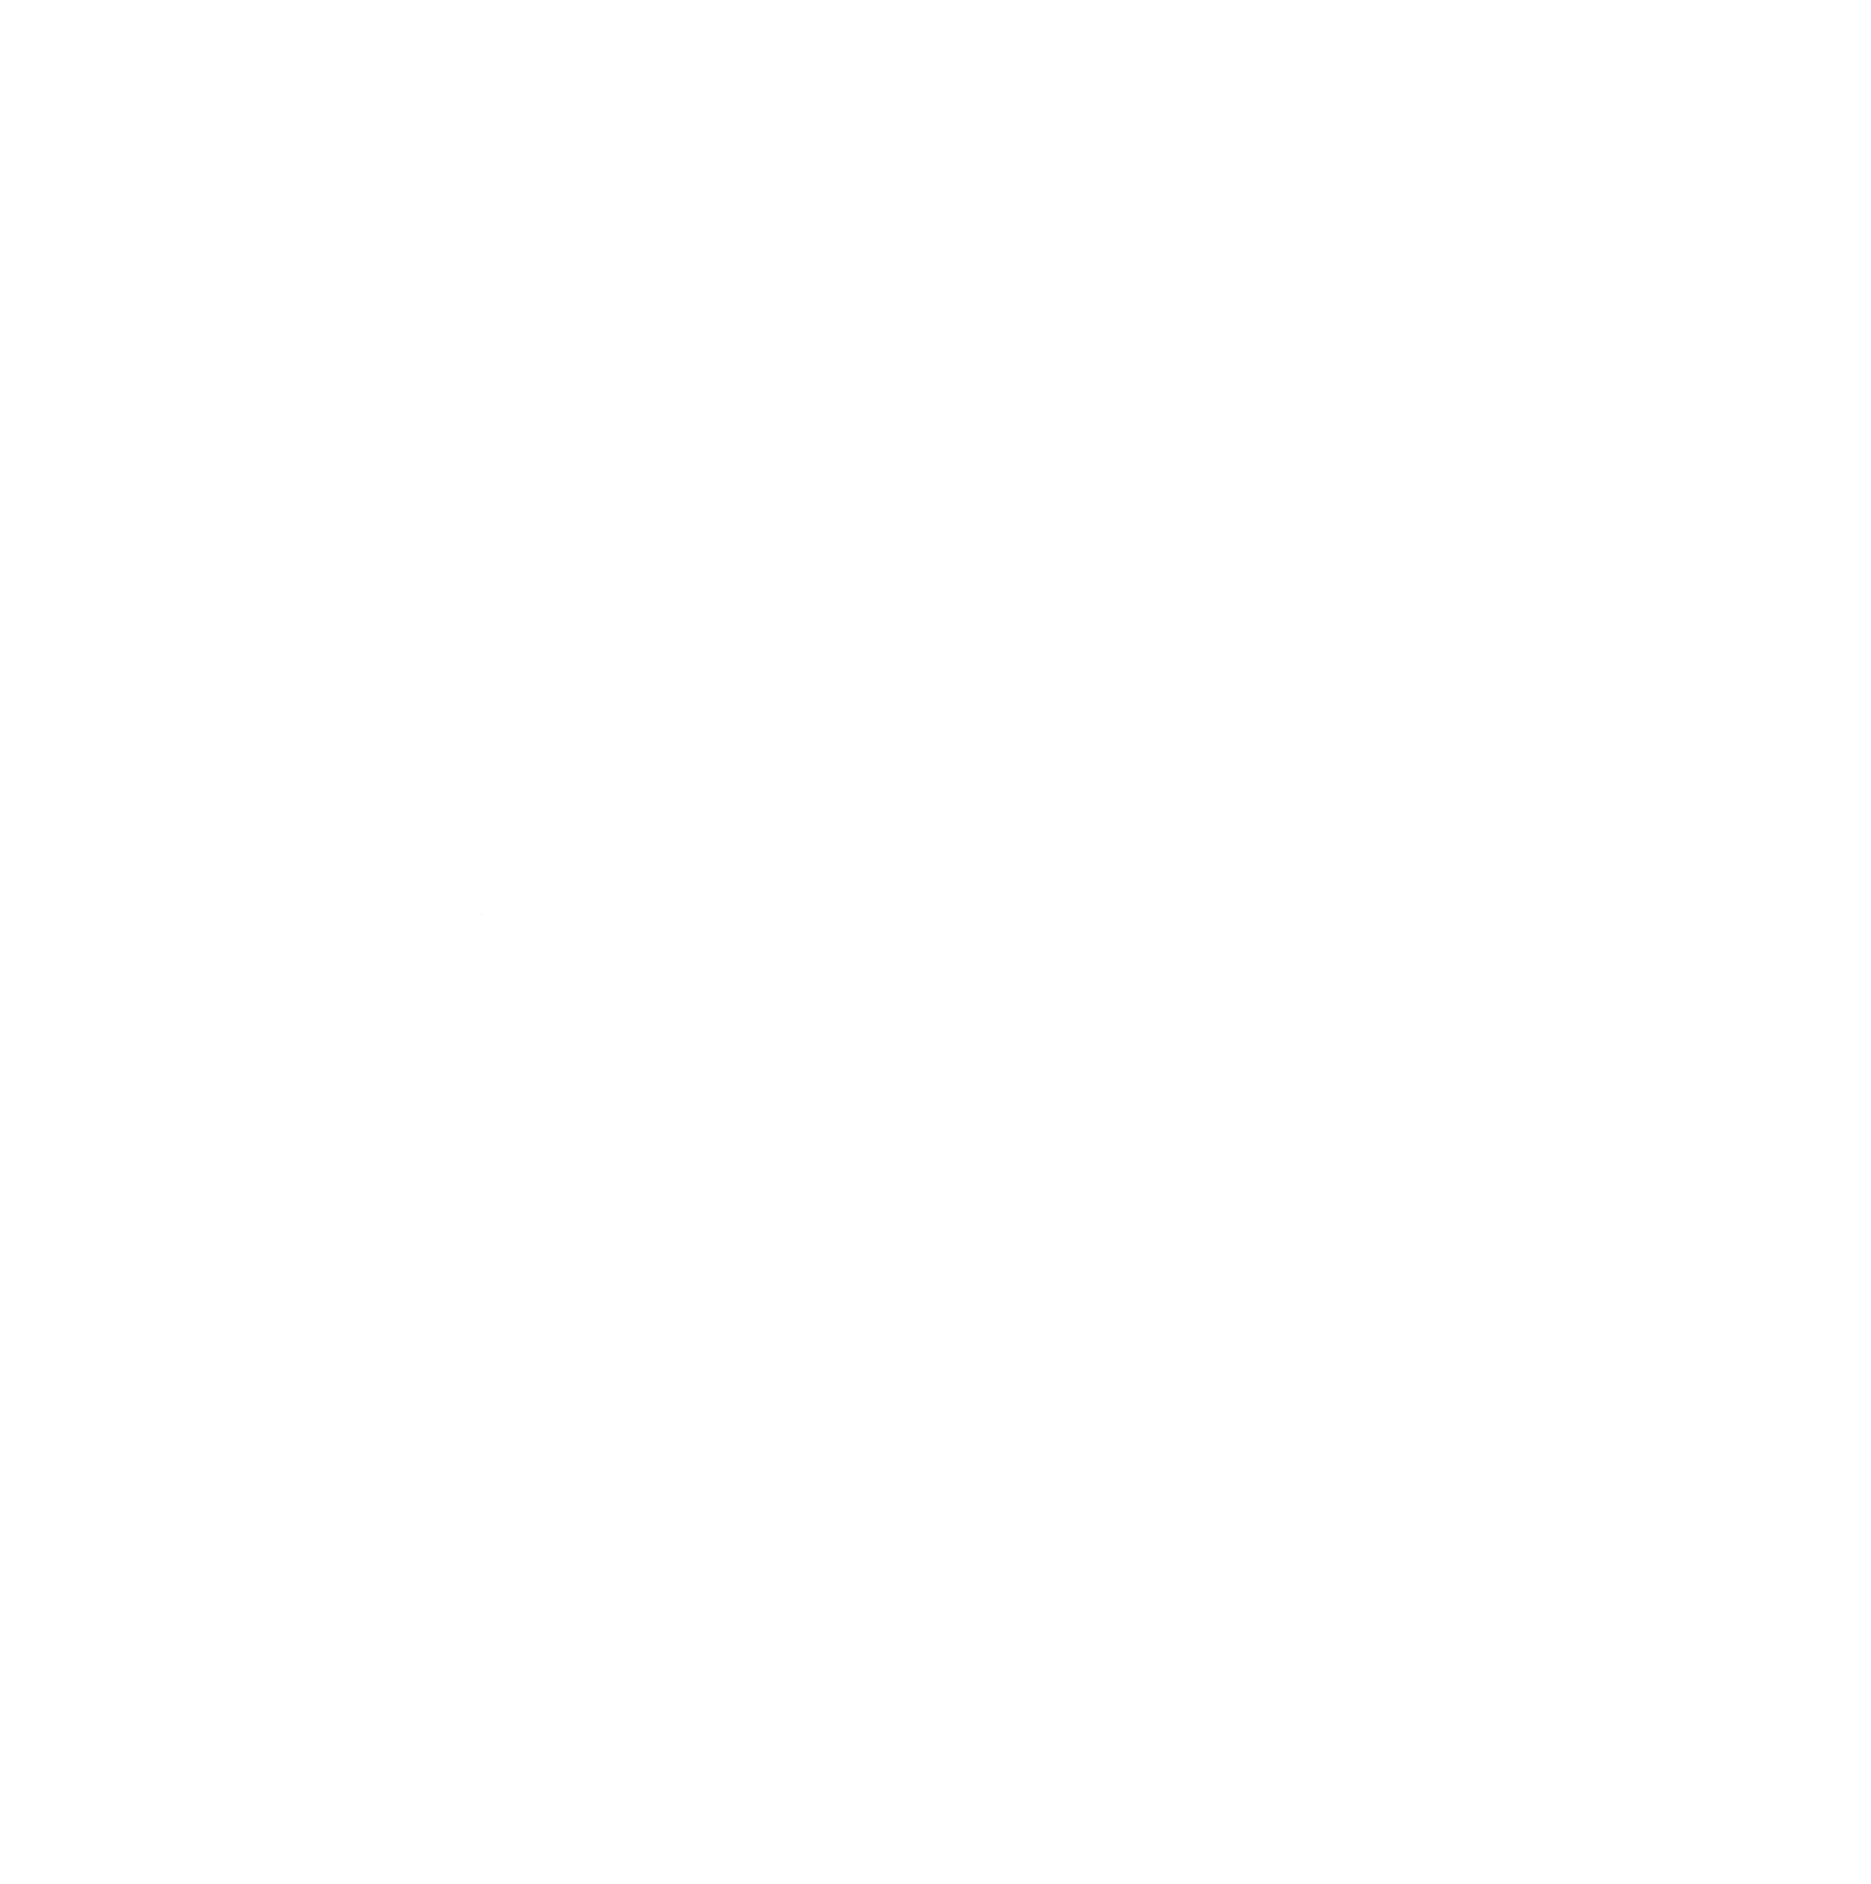 通过DIN EN ISO 9001认证